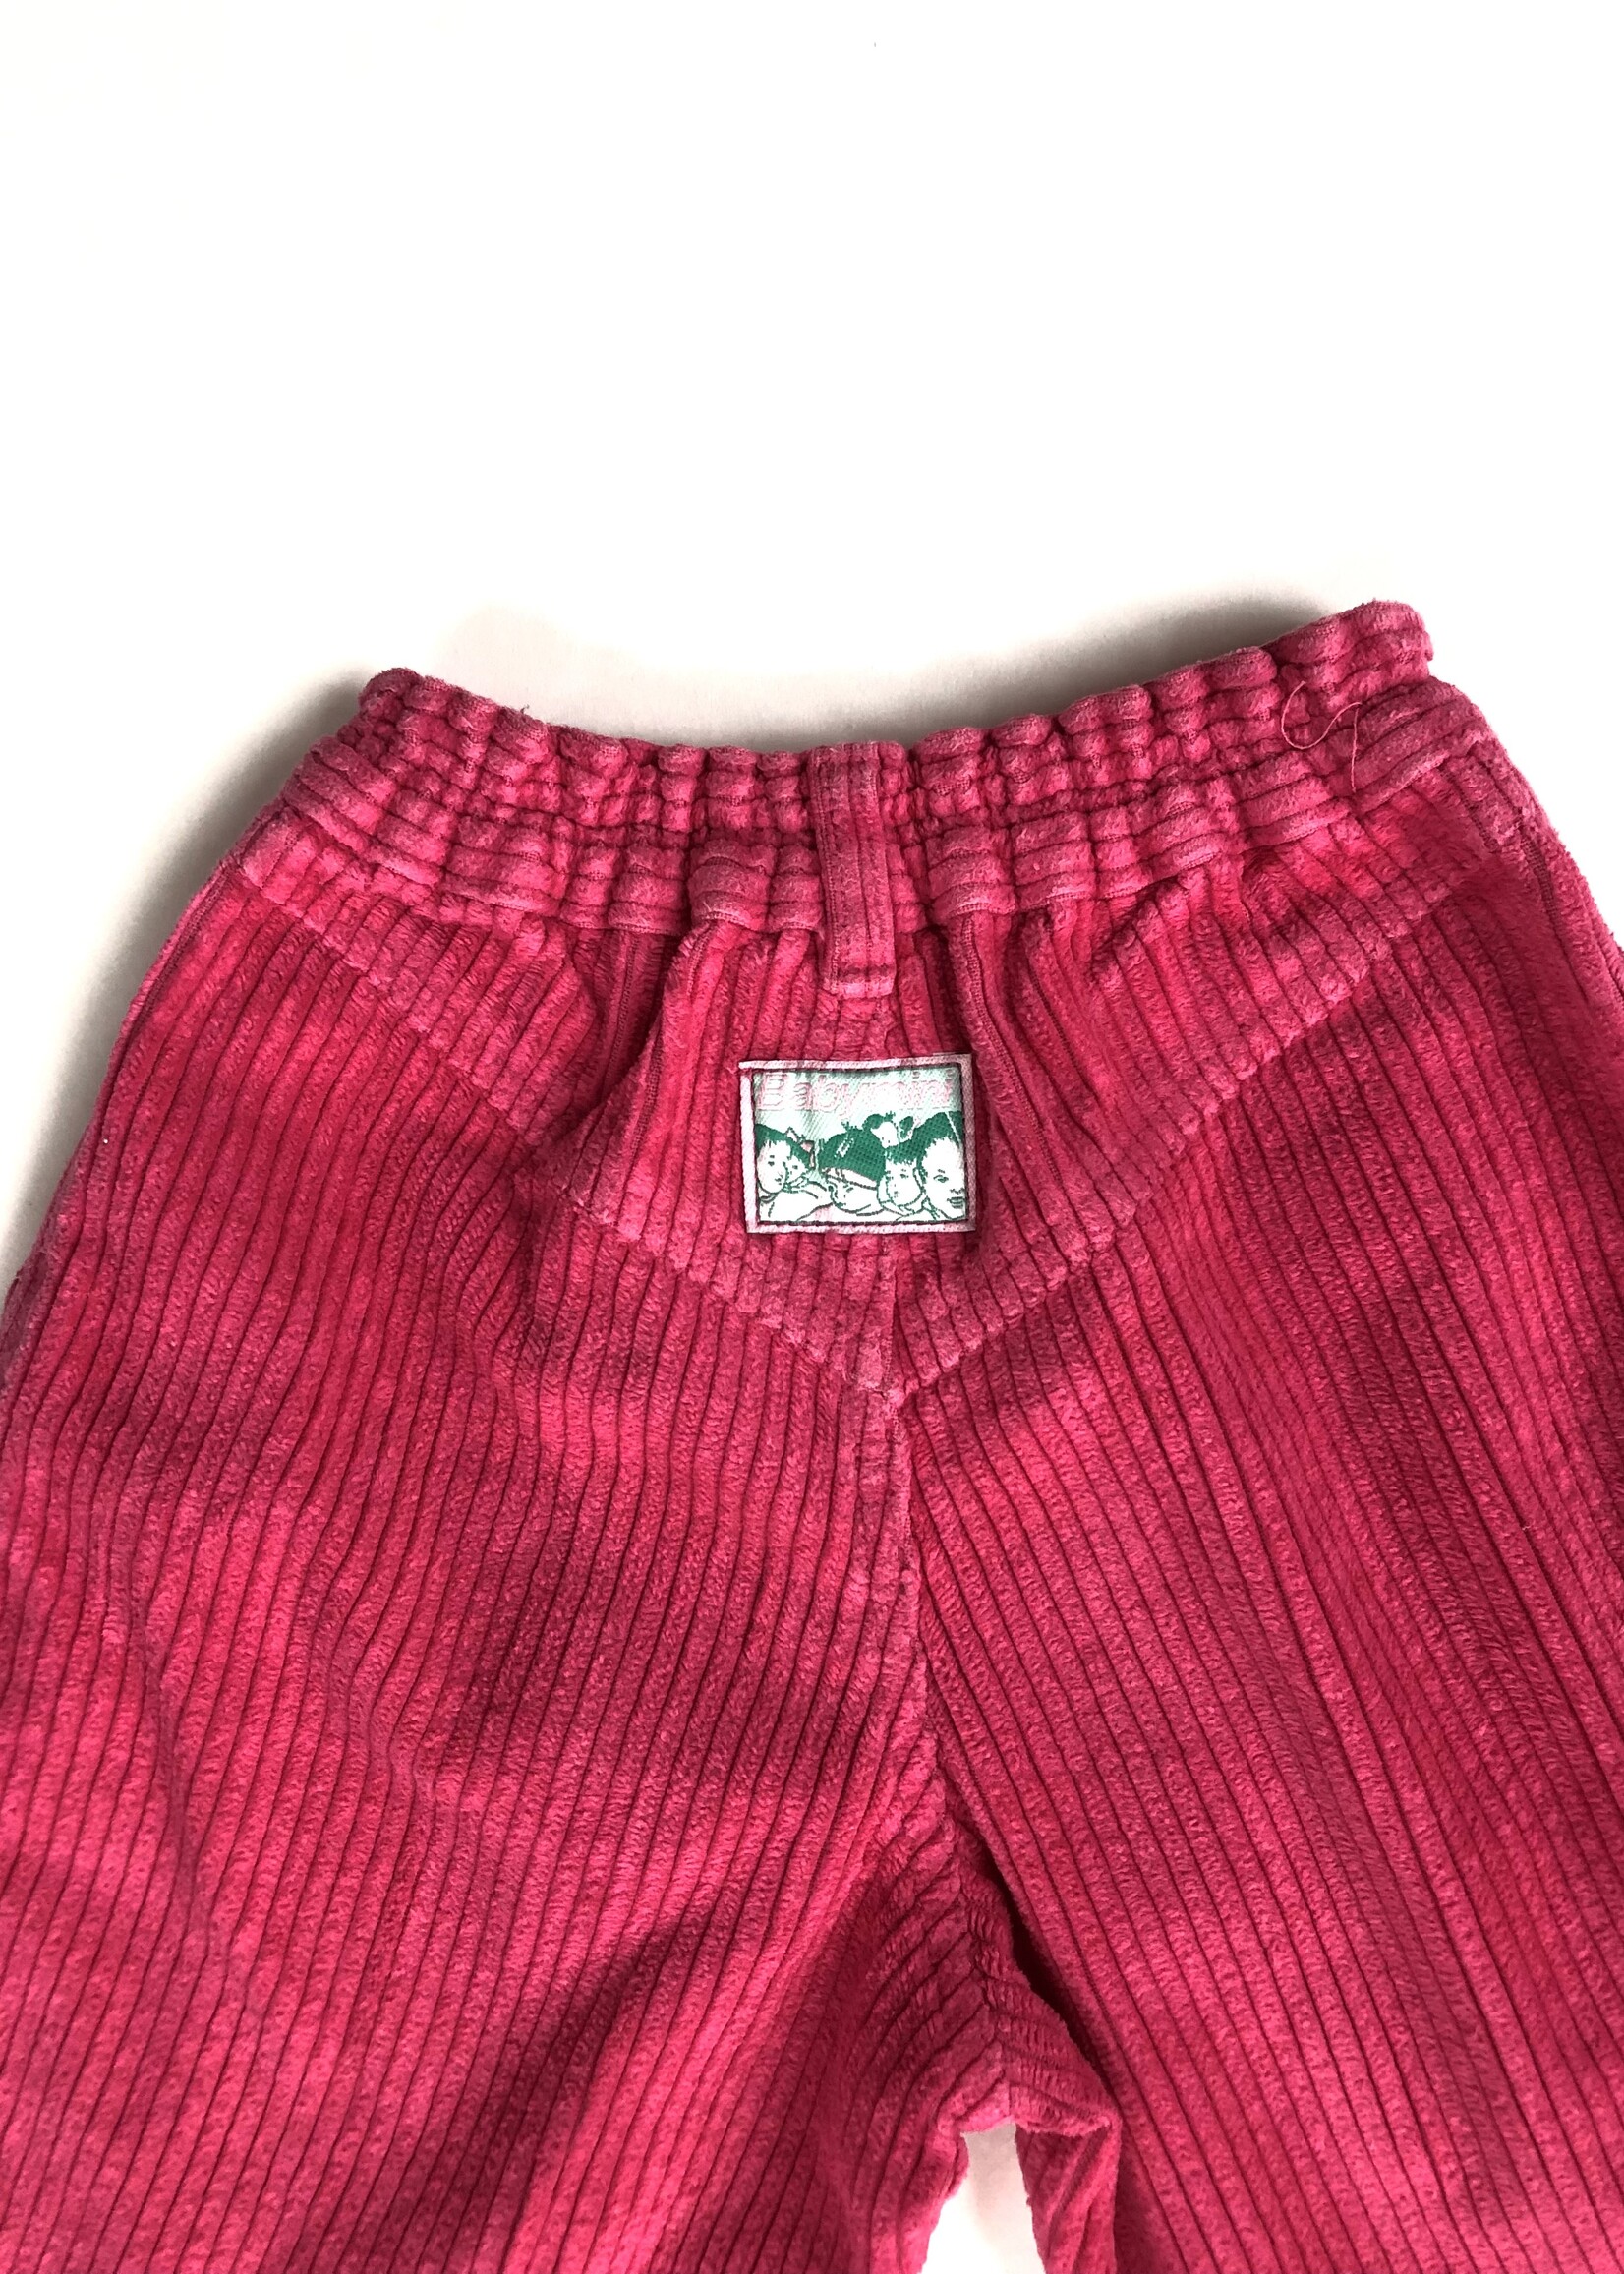 Vintage Pink corduroy puffy pants 4y